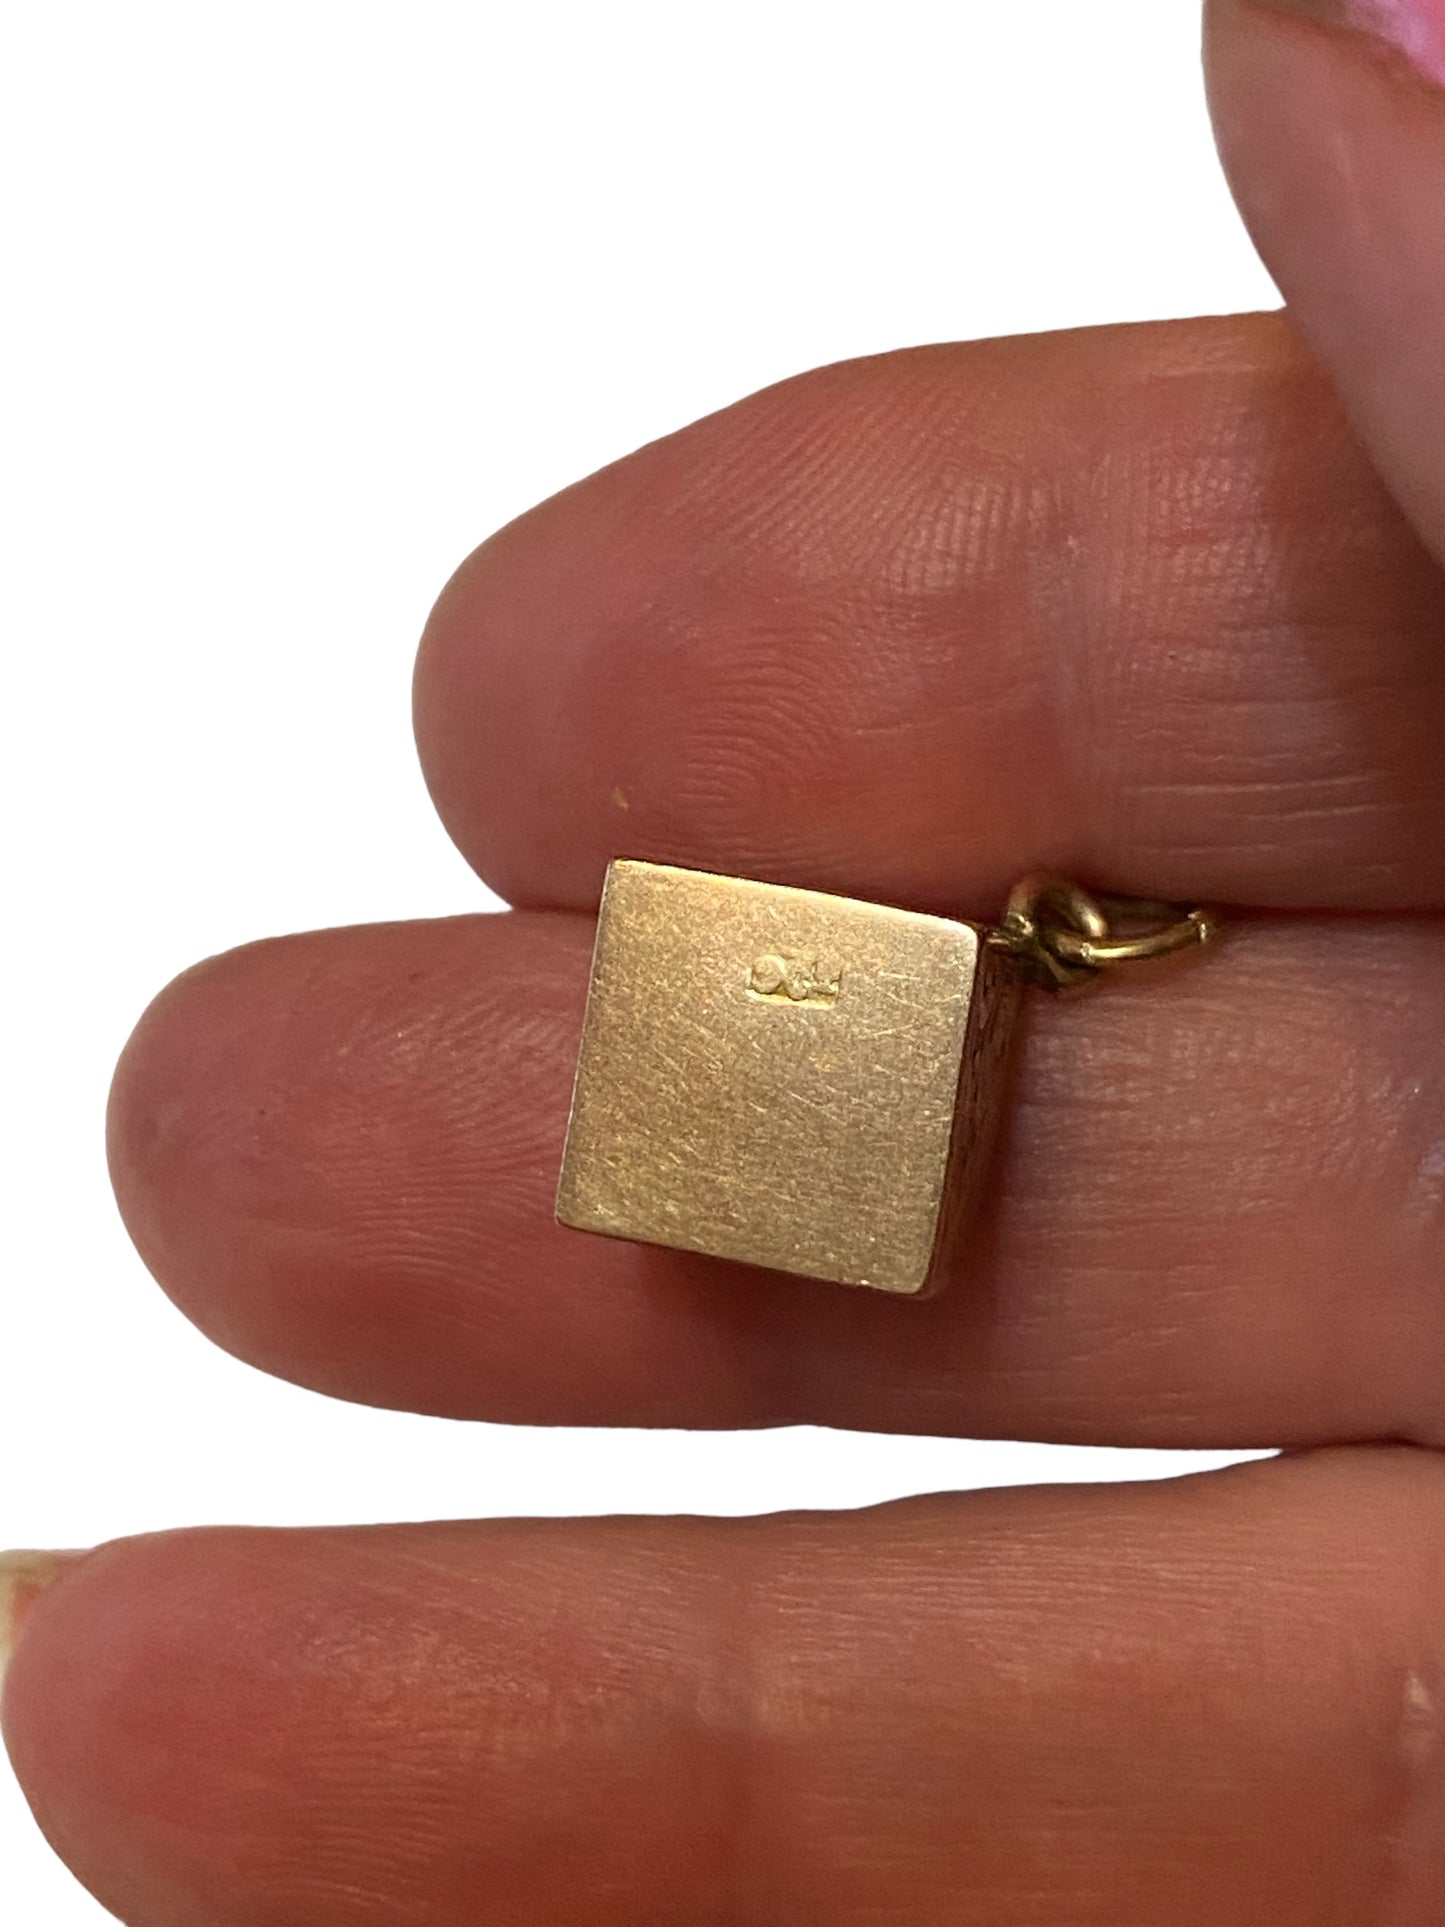 9ct gold vintage cube charm / pendant